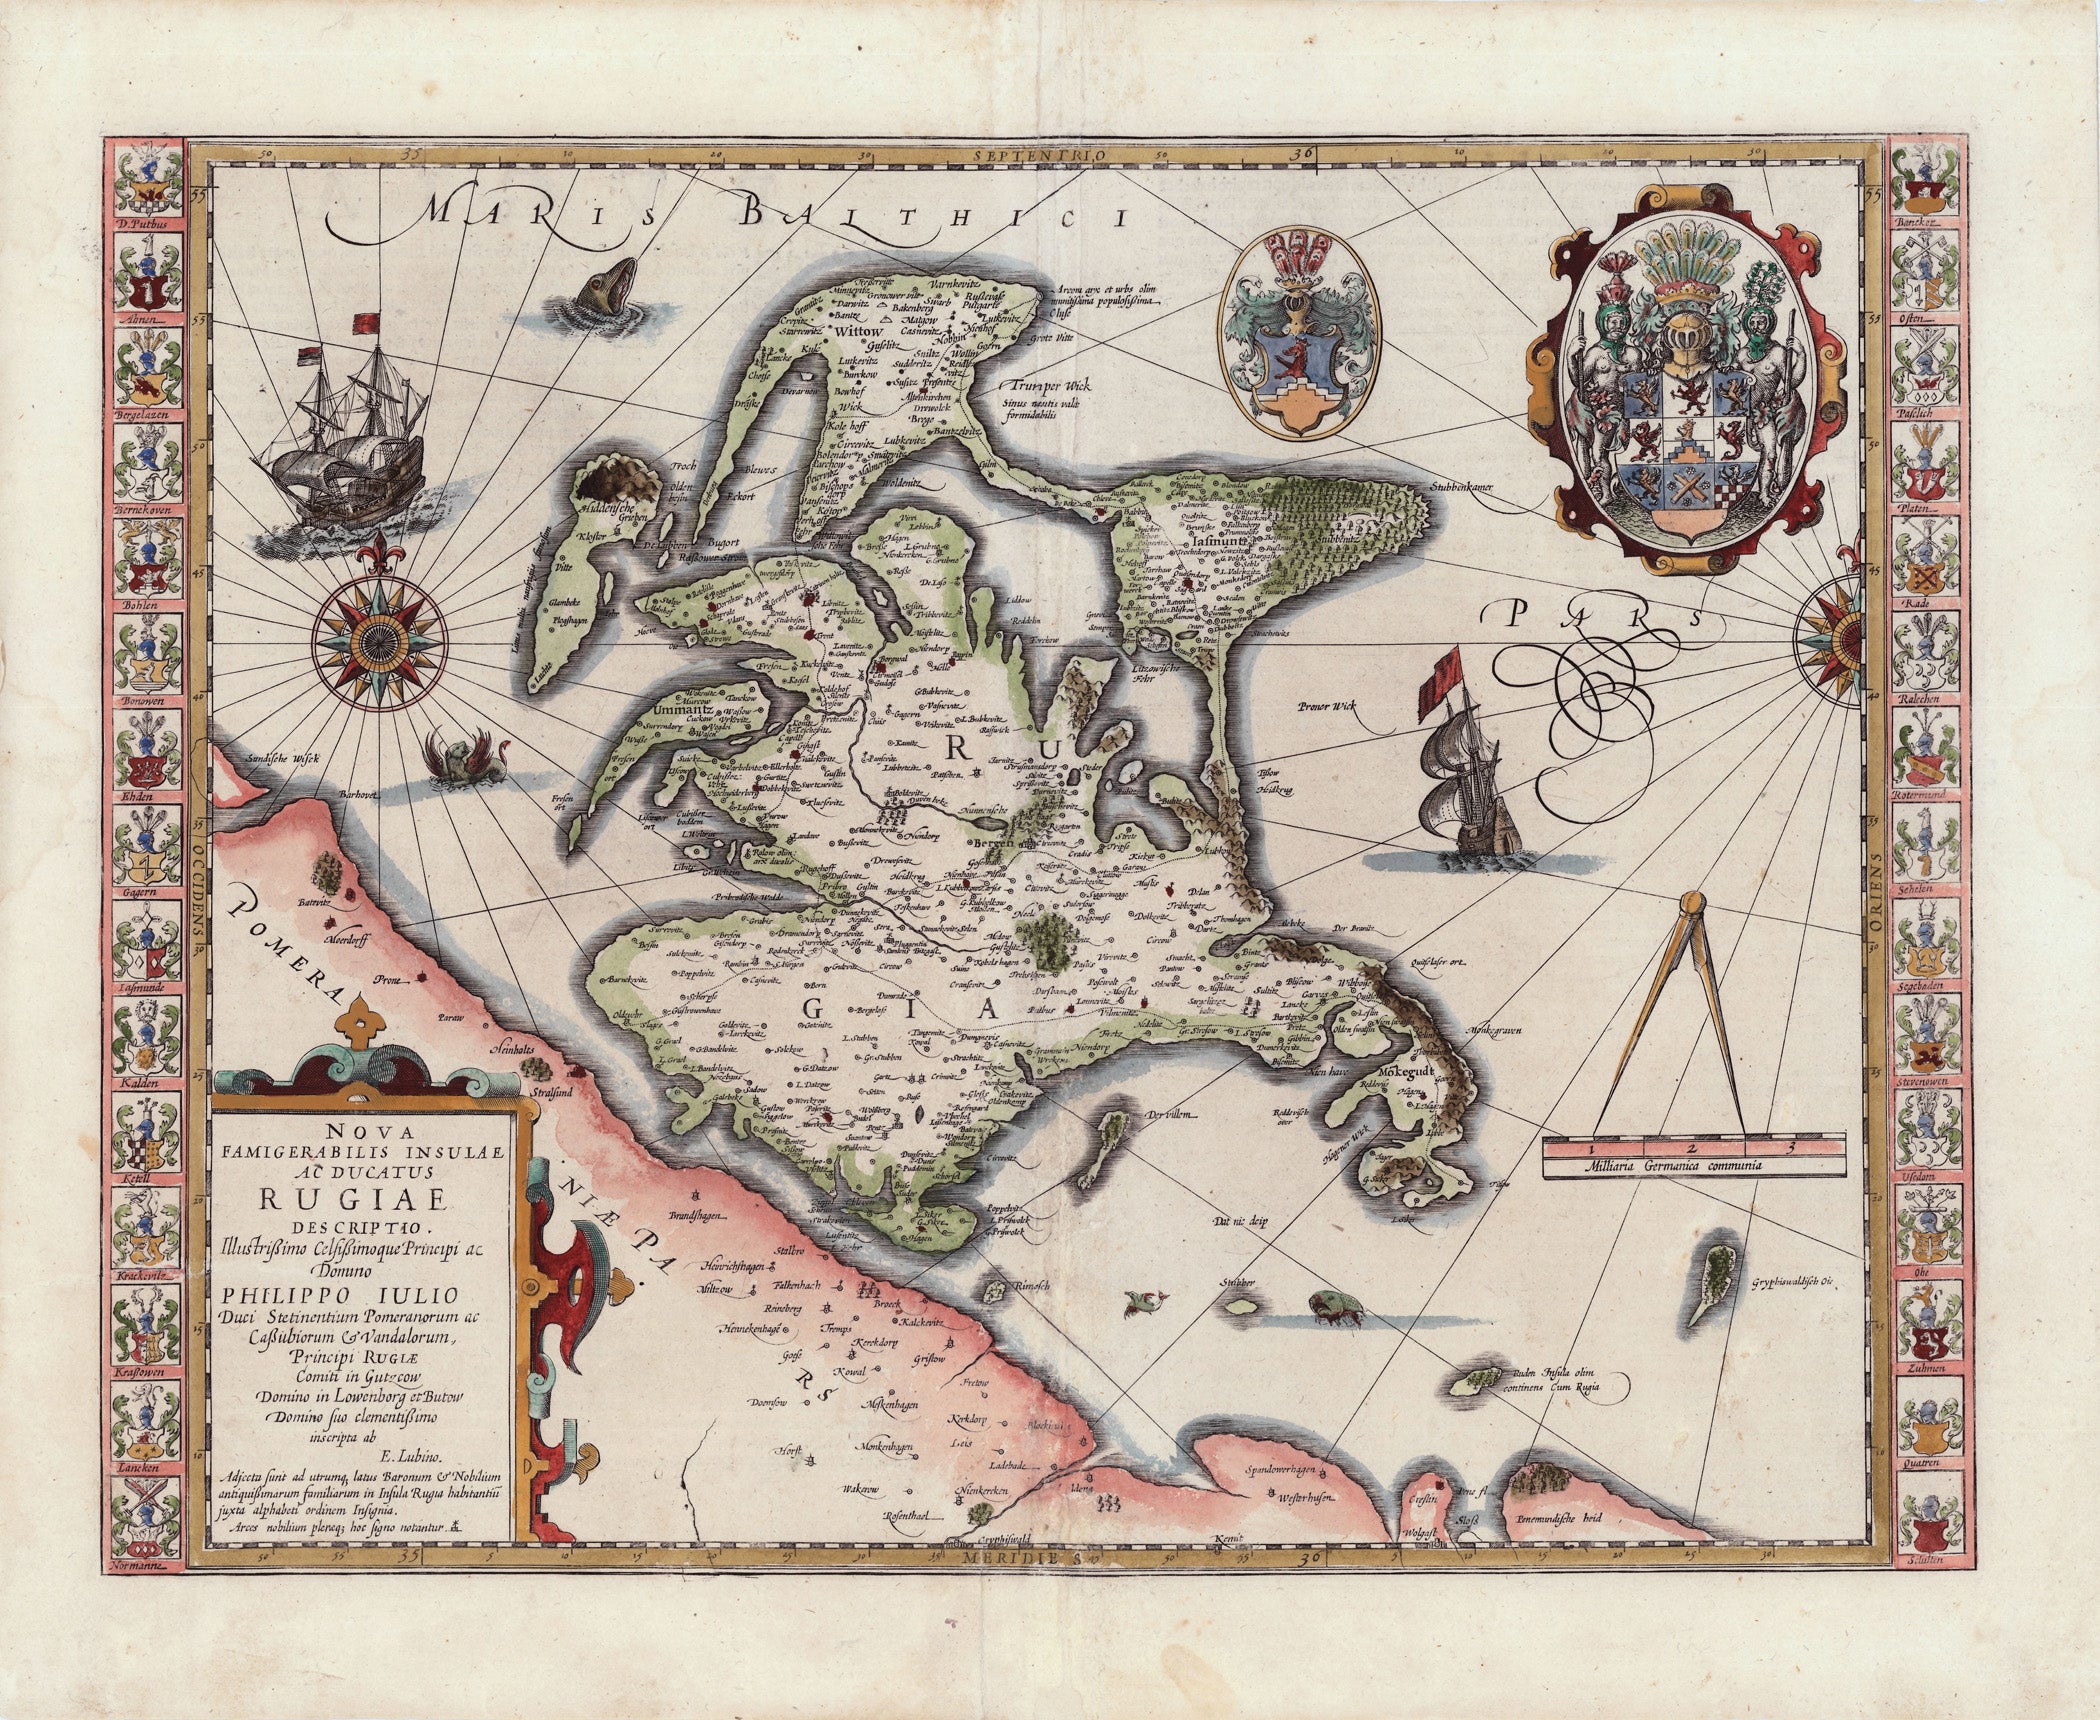 R3806  Mercator - Hondius: Nova Famigerabilis Insulae ac Ducatus Rugiae Descripto 1623